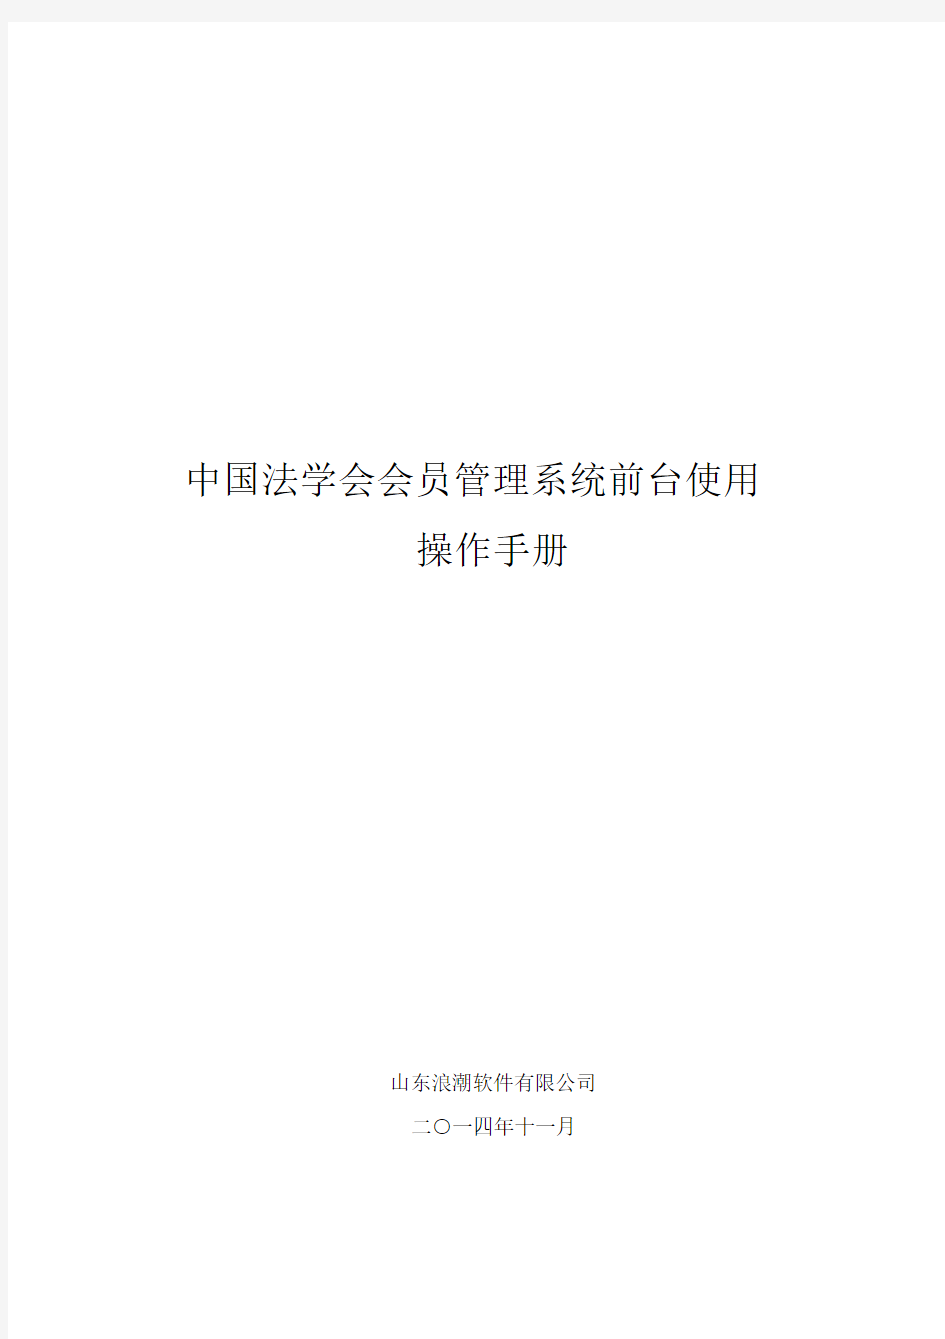 中国法学会会员管理系统操作手册(会员)